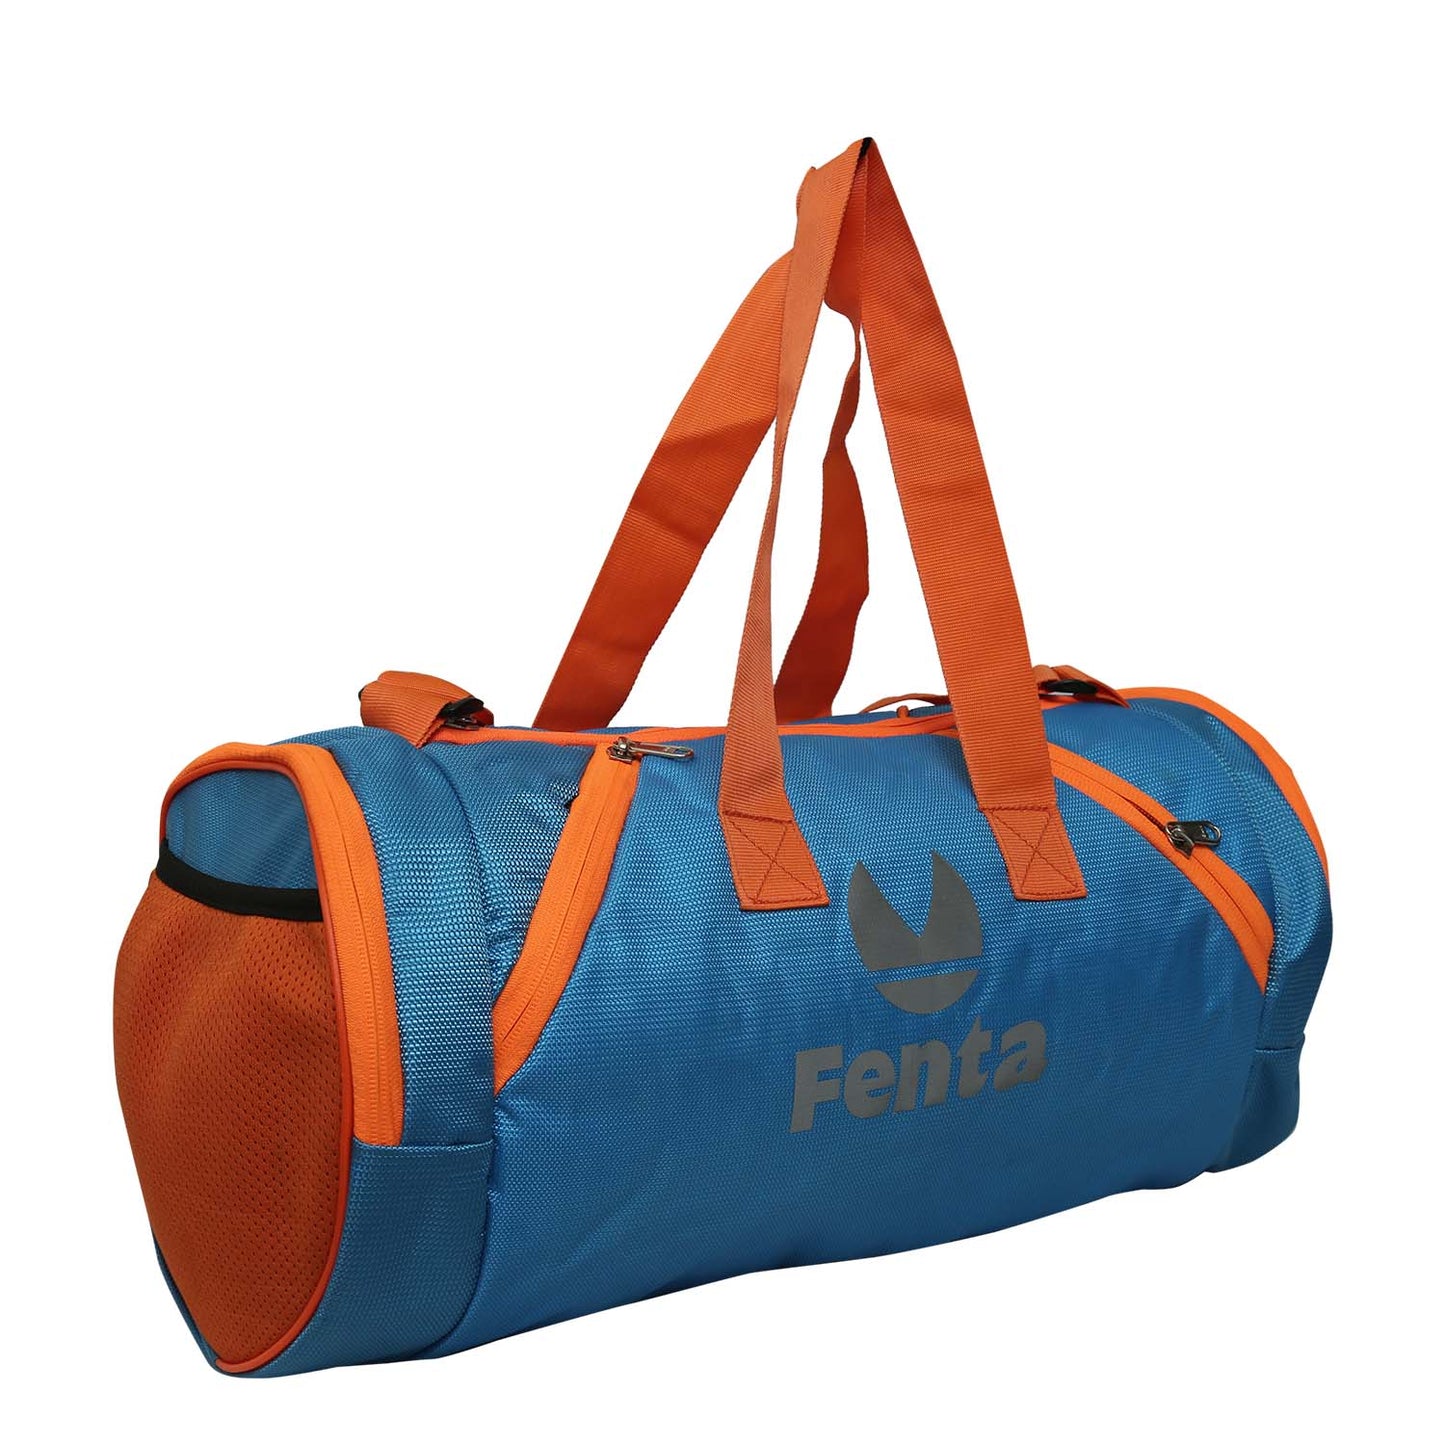 FENTA UNISEX TD-1 Travel Duffle and Gym Bag